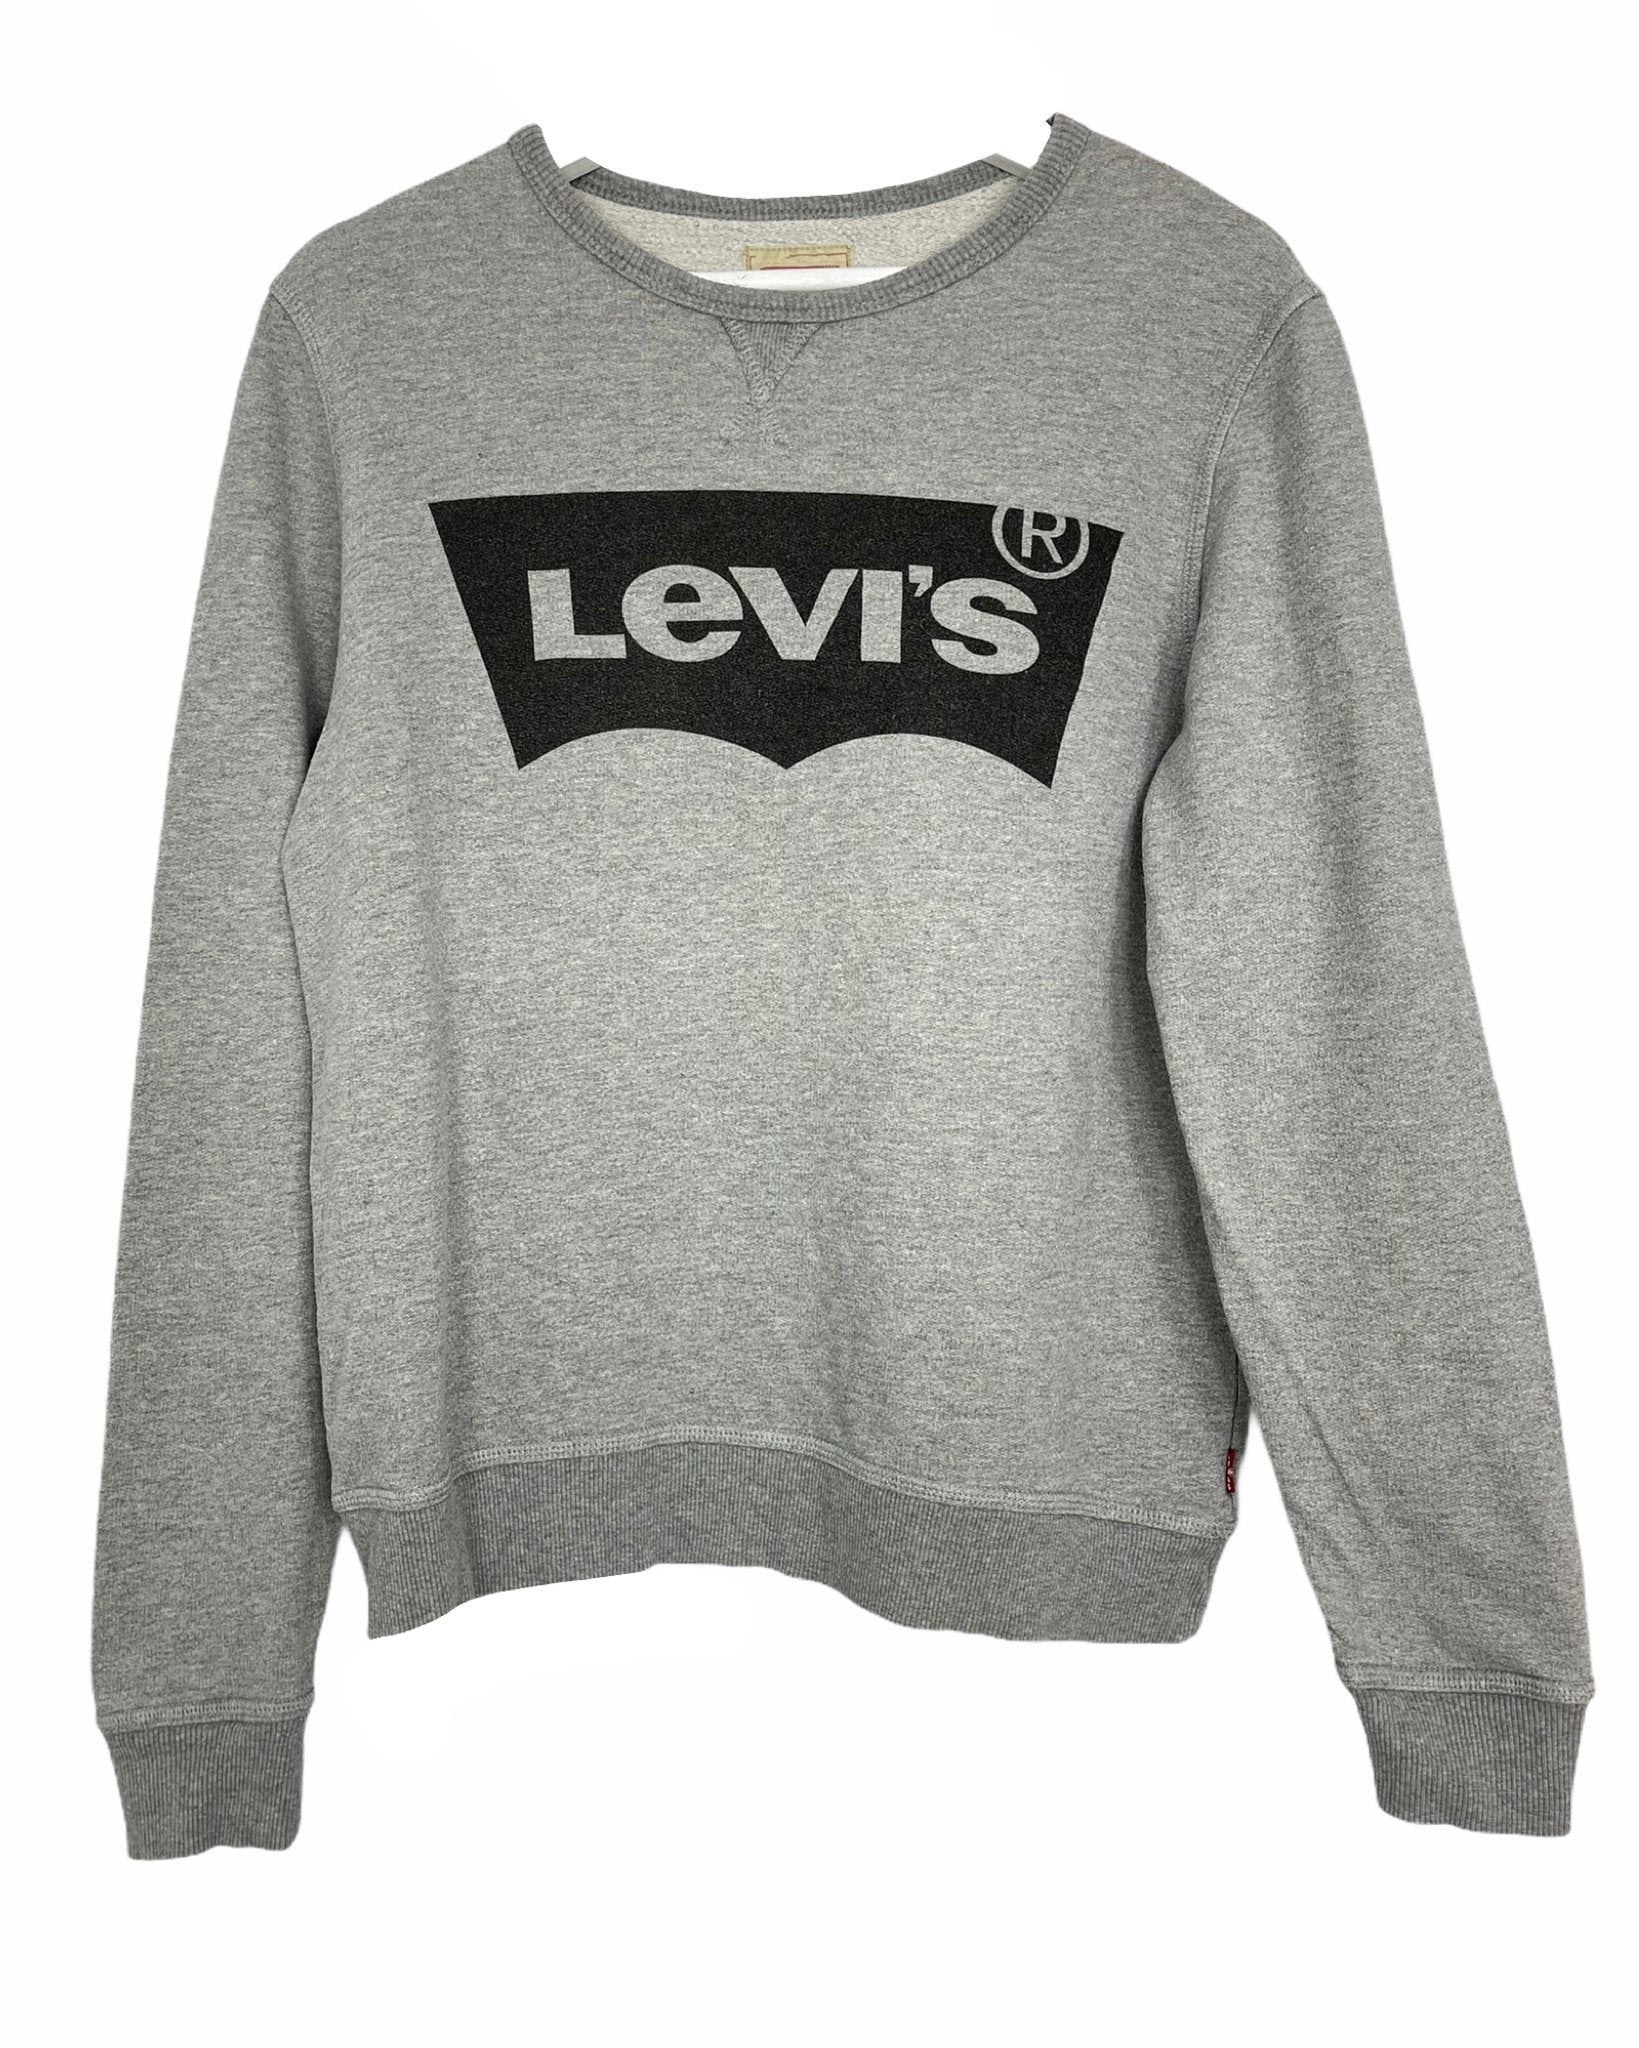  Sweatshirt Levi's Sweat - XS - PLOMOSTORE